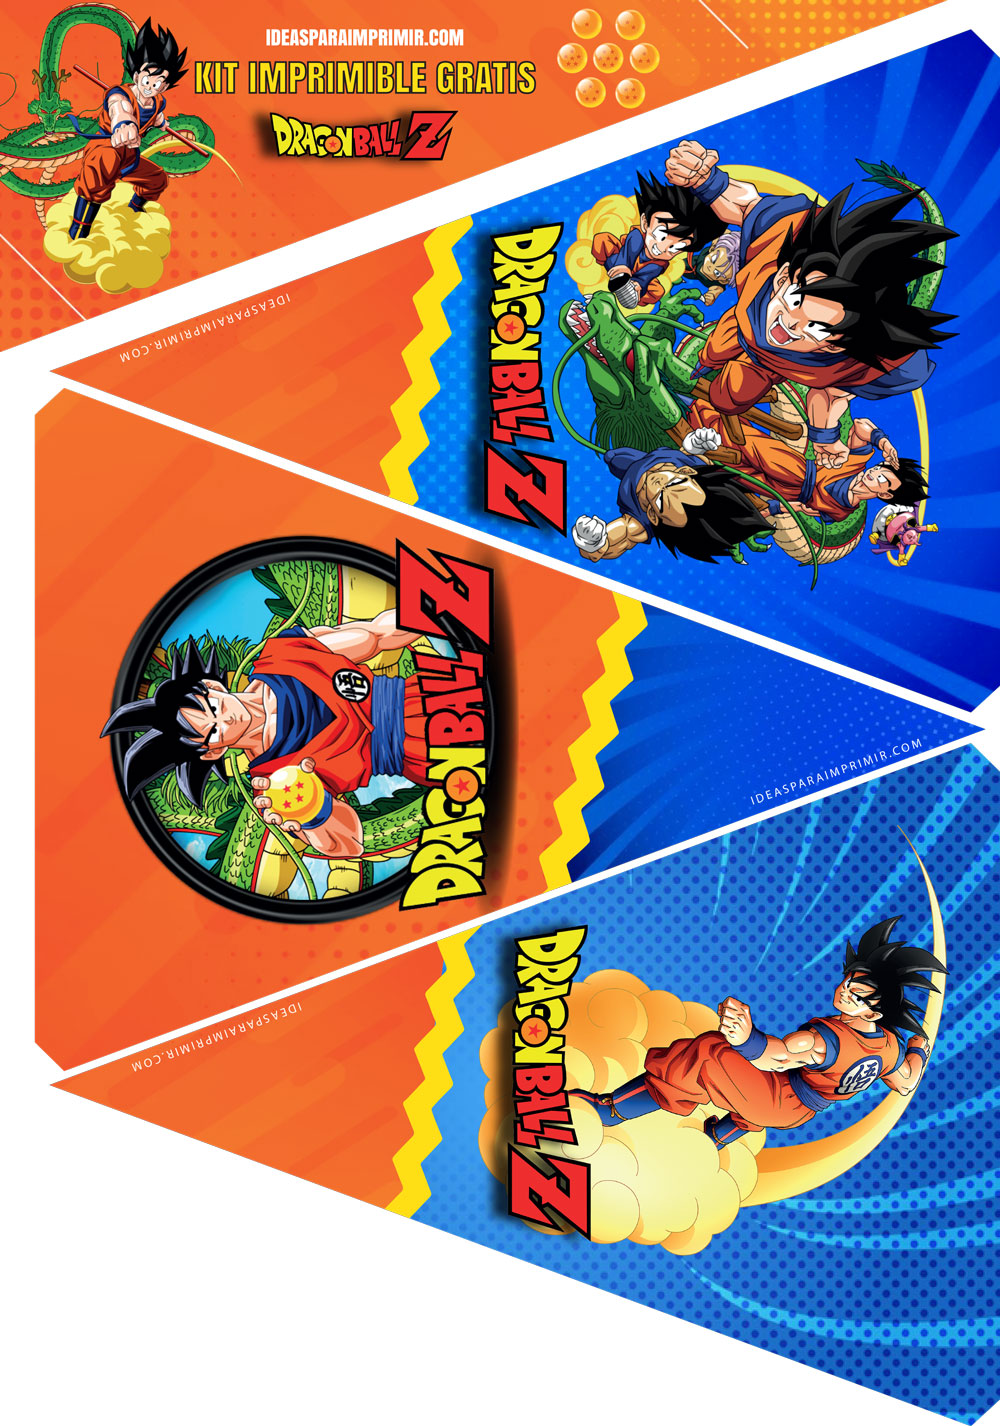 Dragon Ball / Goku | Descargar   GRATIS | Ideas para imprimir